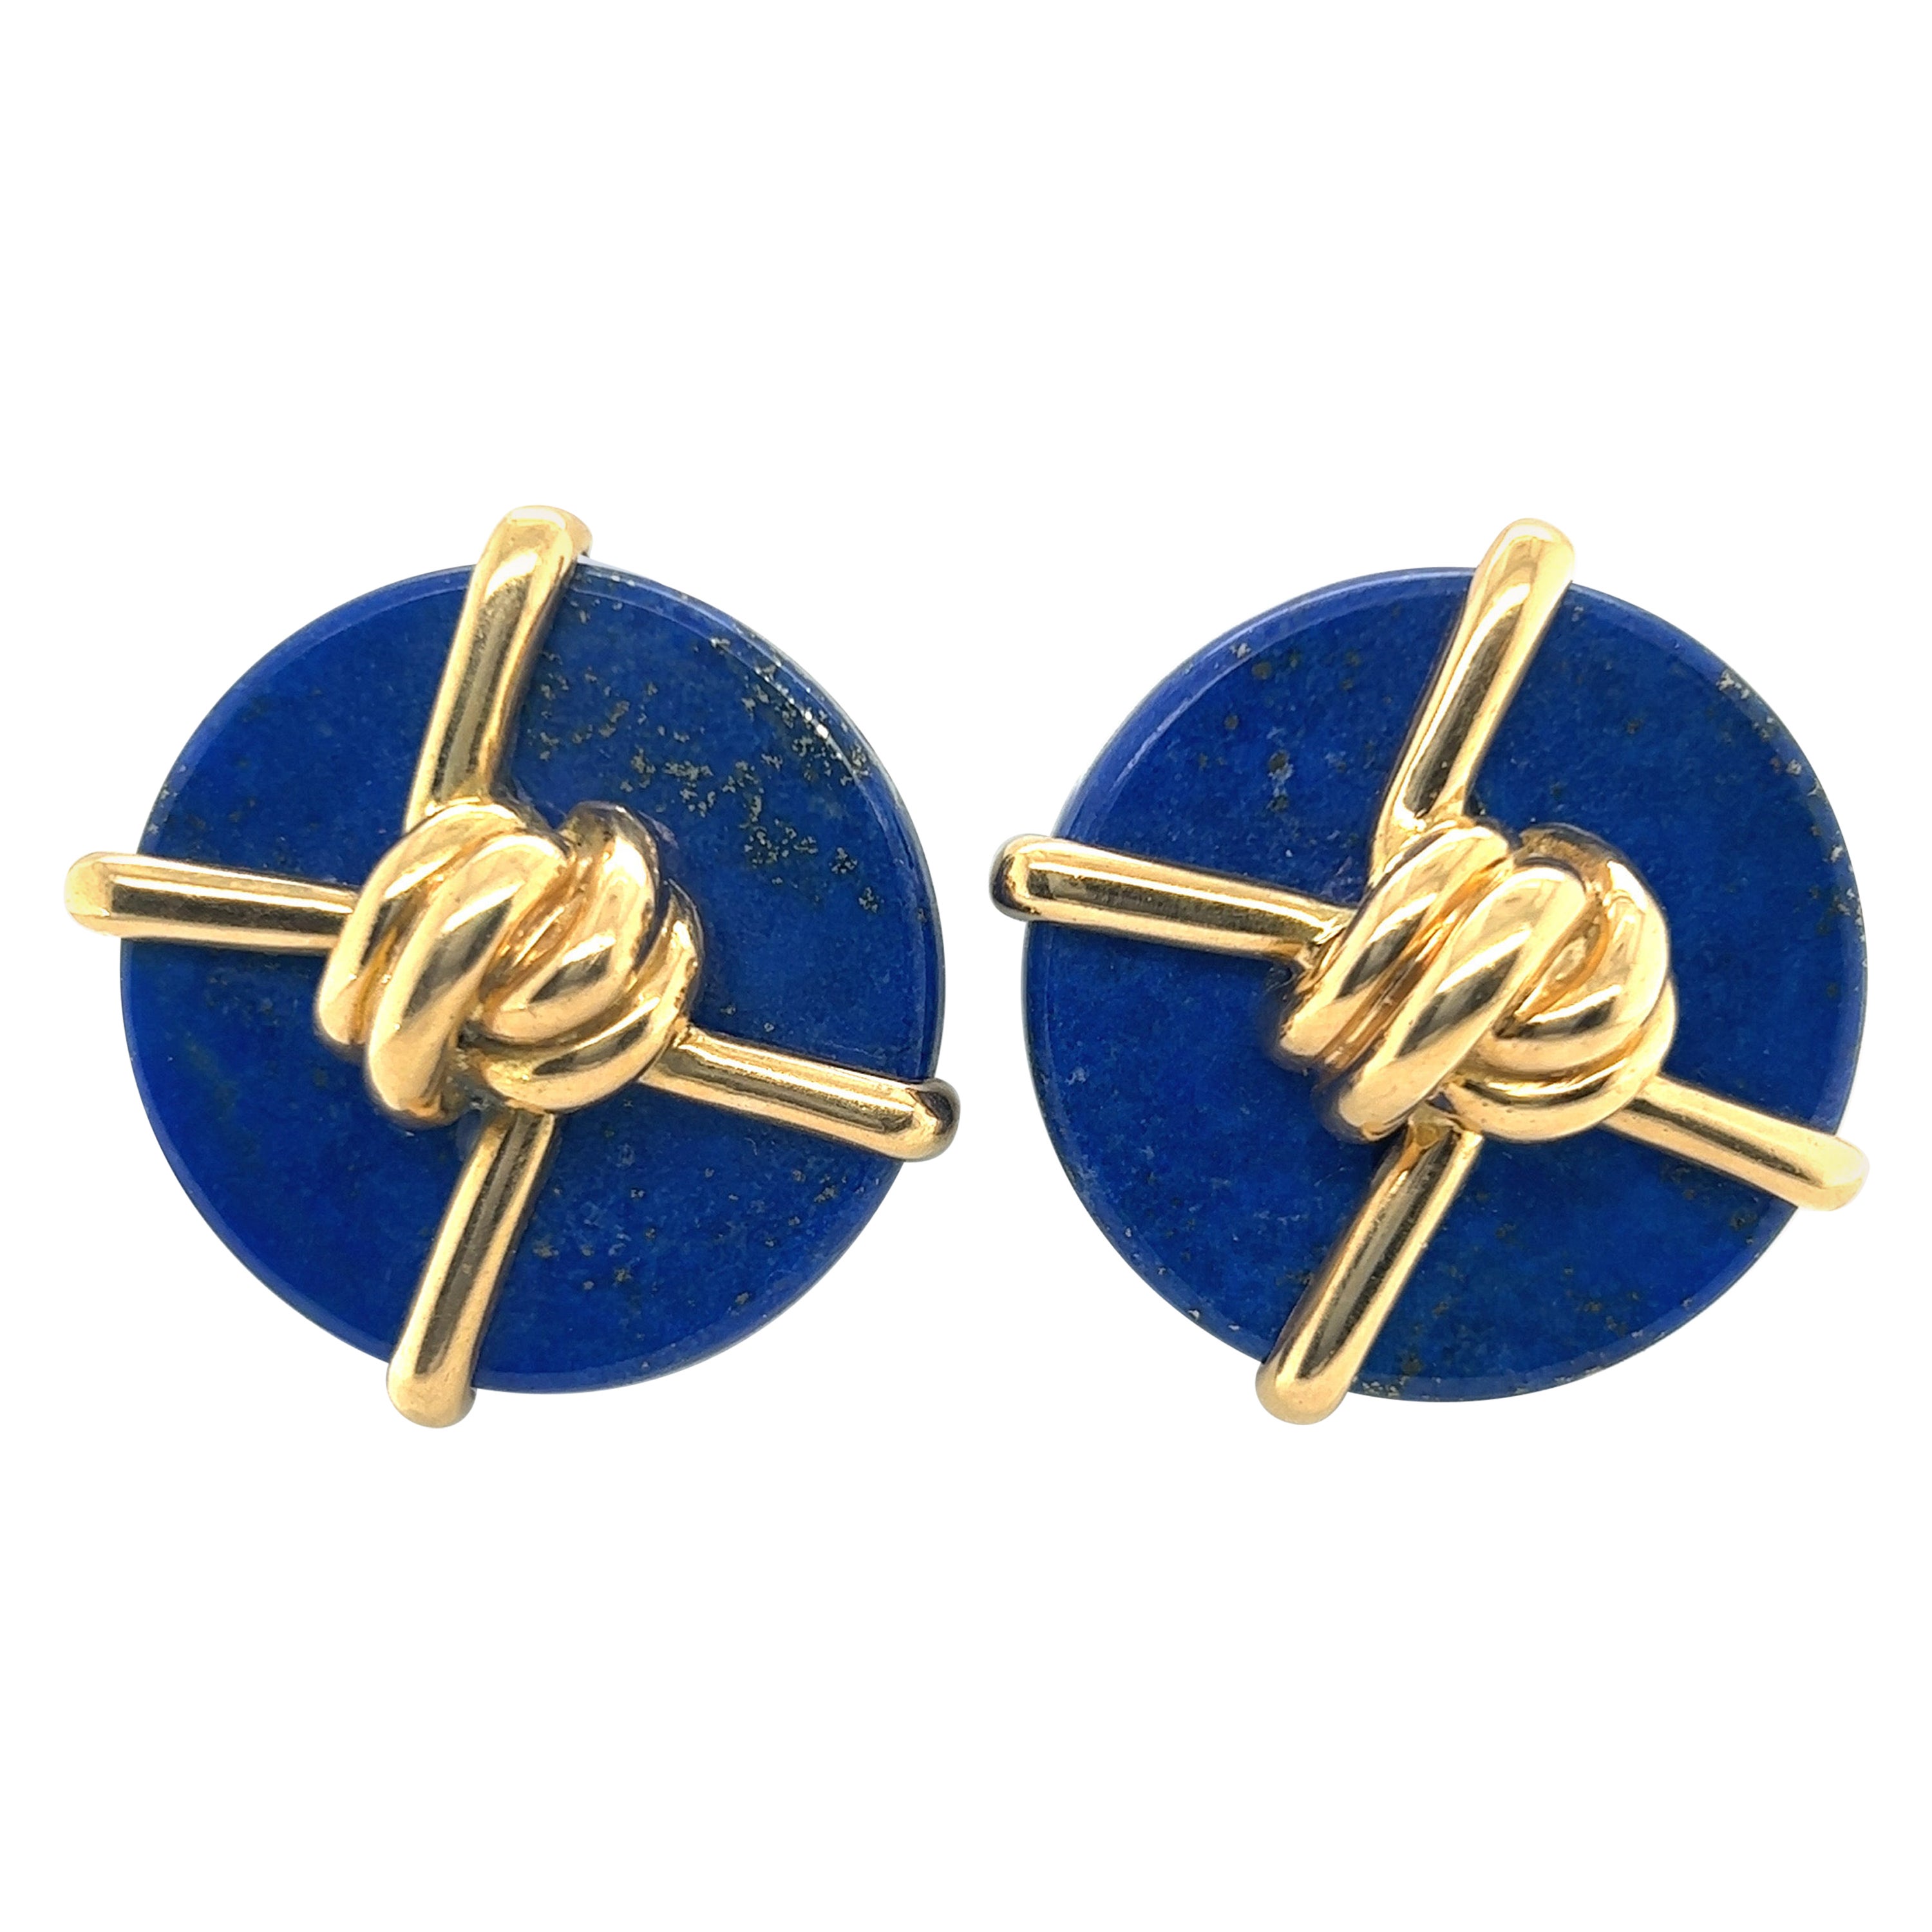 Aldo Cipullo pour Cartier, boucles d'oreilles en or 18 carats, lapis-lazuli, 1973